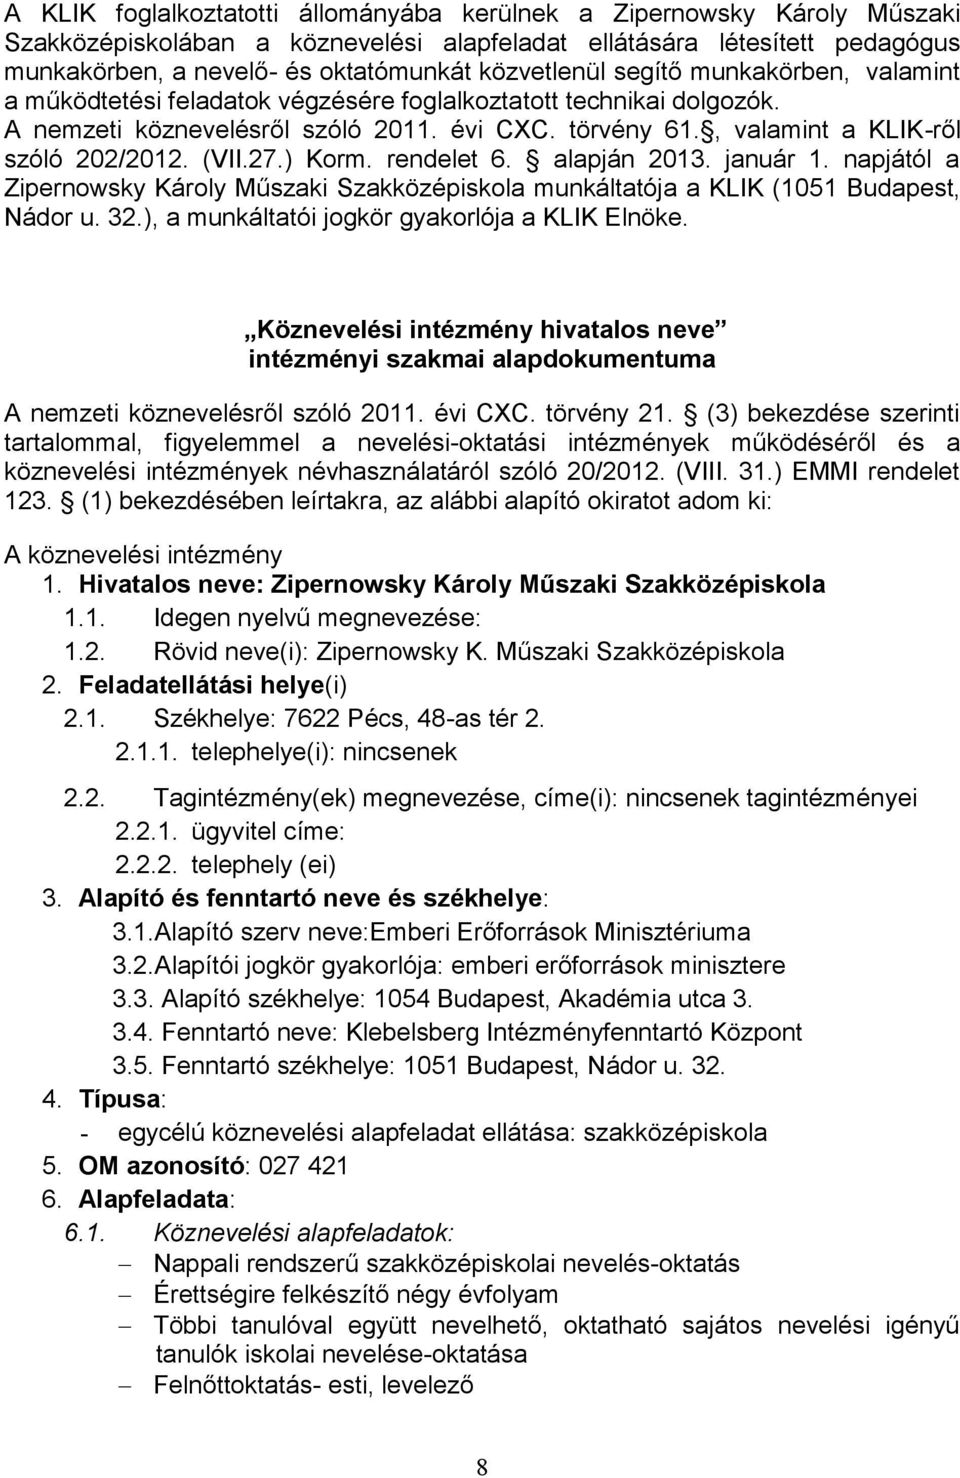 , valamint a KLIK-ről szóló 202/2012. (VII.27.) Korm. rendelet 6. alapján 2013. január 1. napjától a Zipernowsky Károly Műszaki Szakközépiskola munkáltatója a KLIK (1051 Budapest, Nádor u. 32.